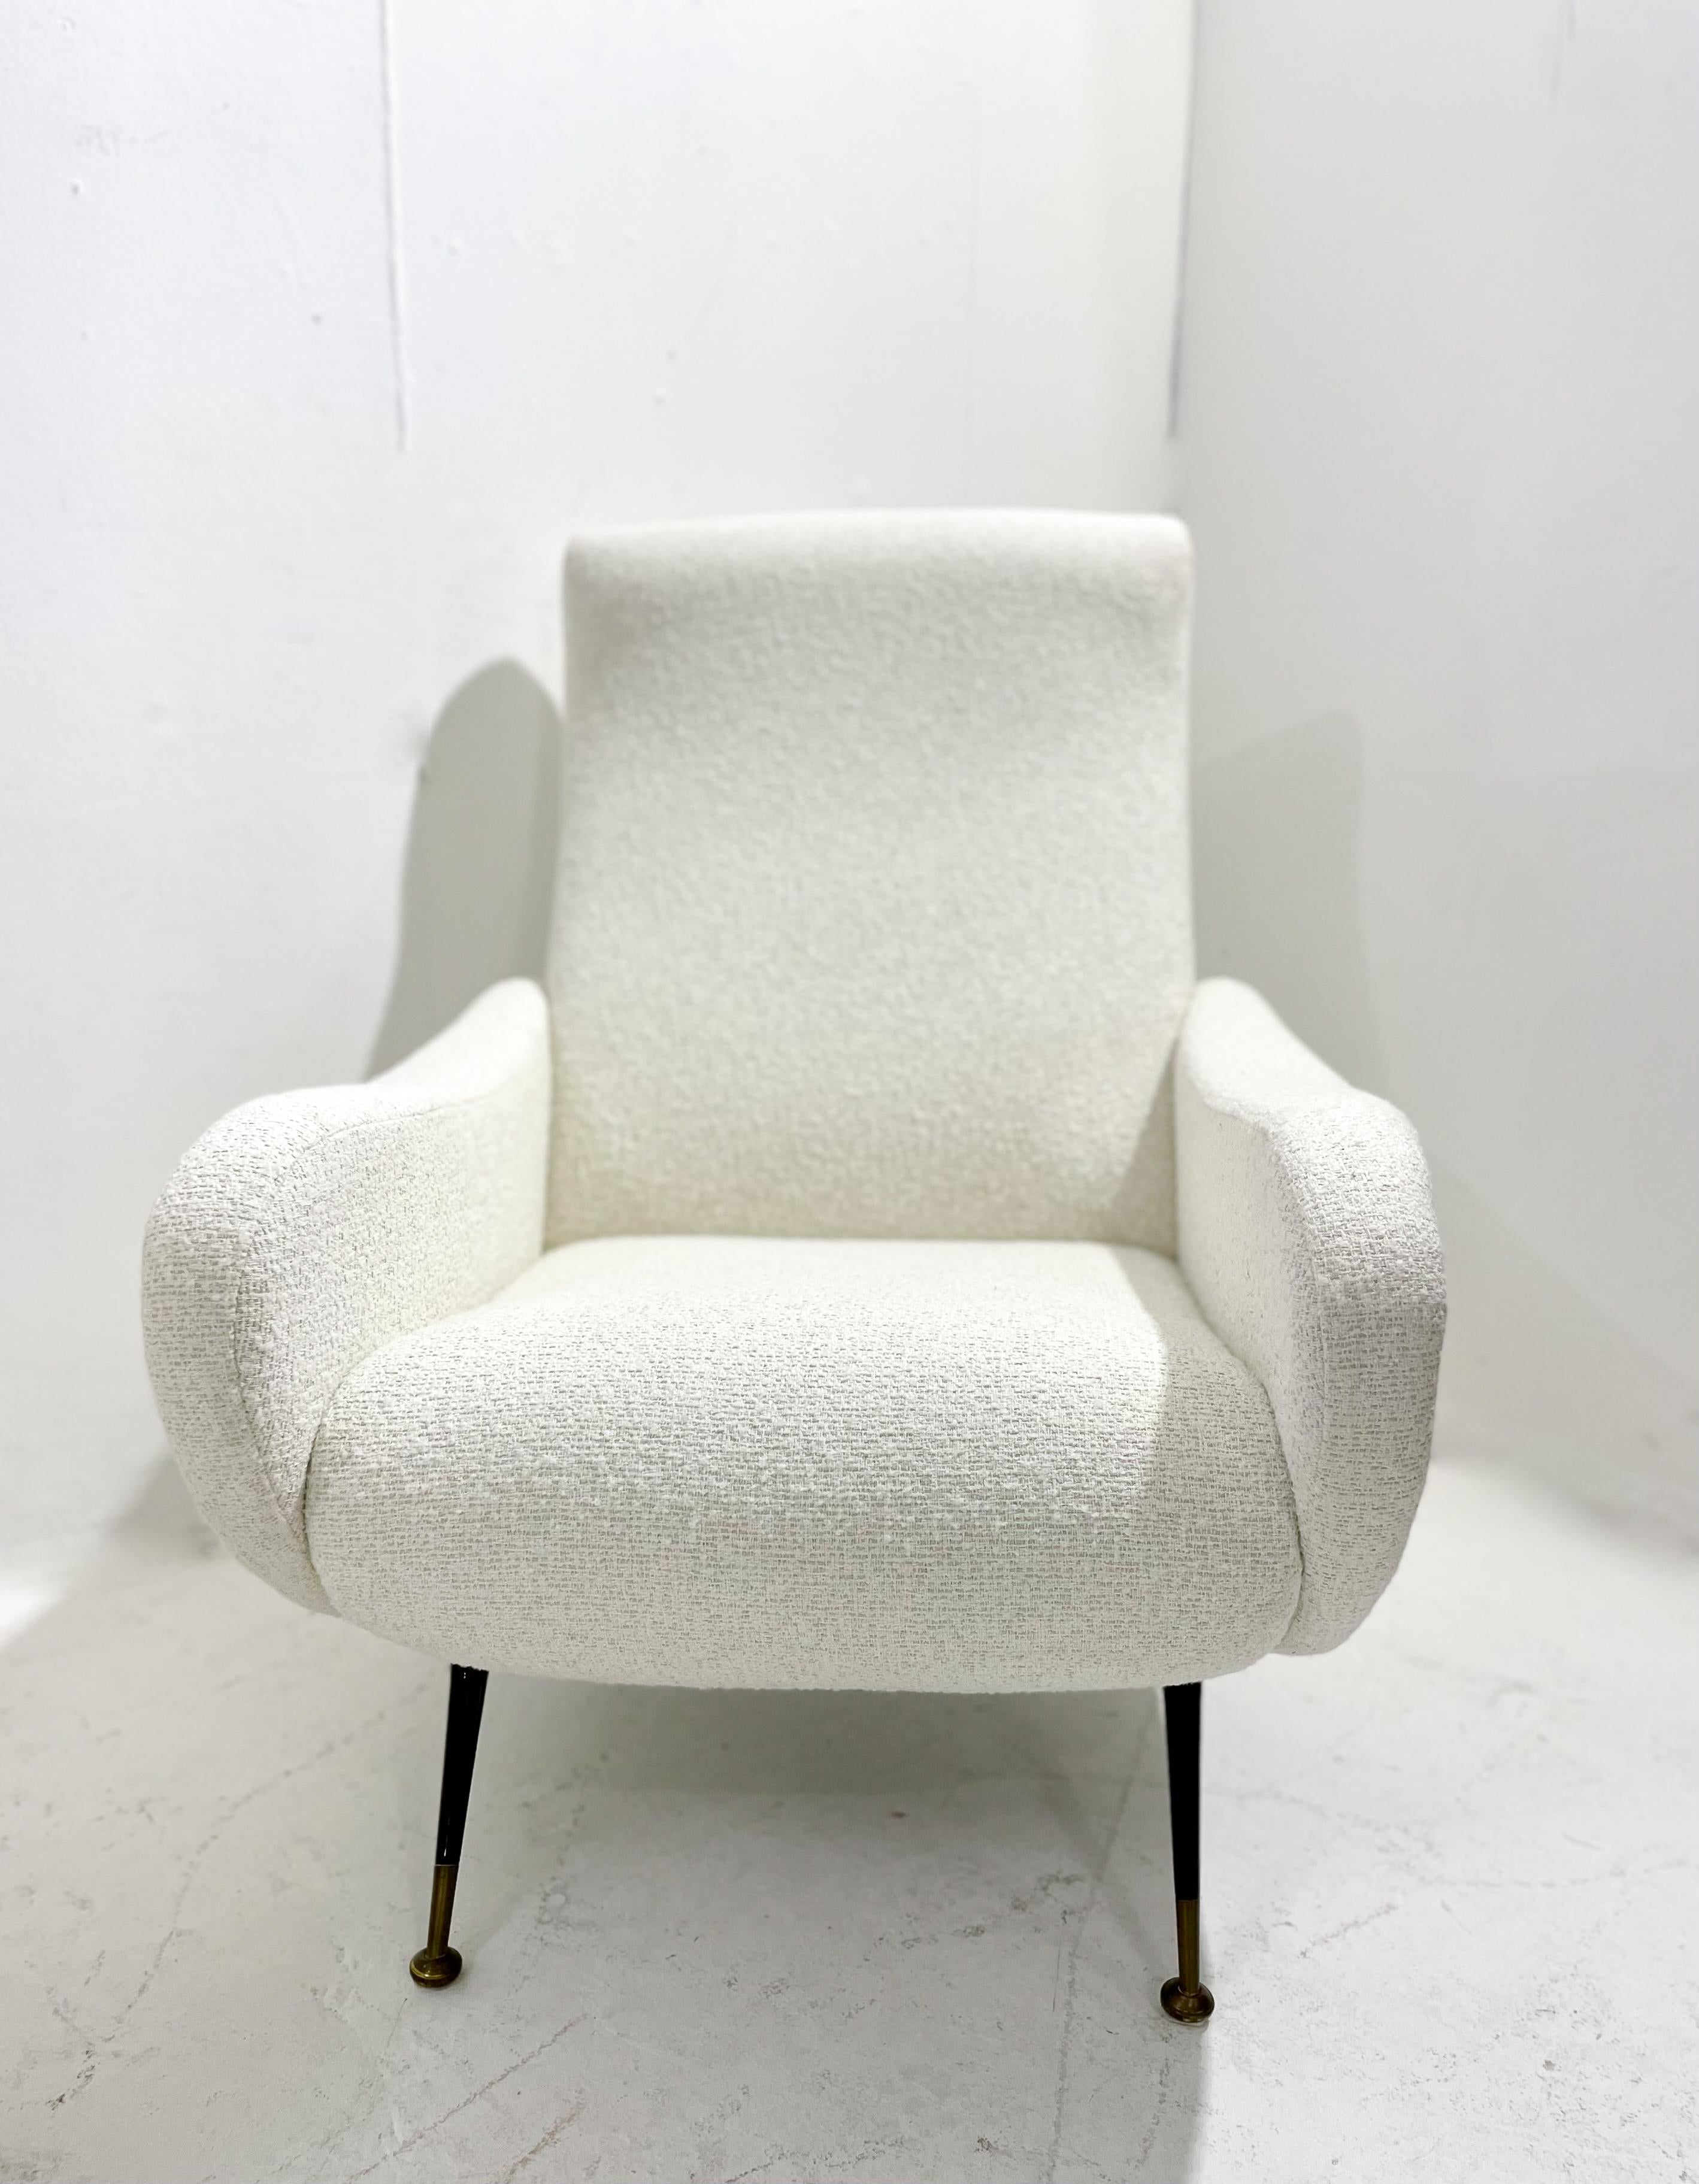 Zwei italienische Sessel aus der Jahrhundertmitte, weißer Stoff, 1950er Jahre.
Neue Polstermöbel.